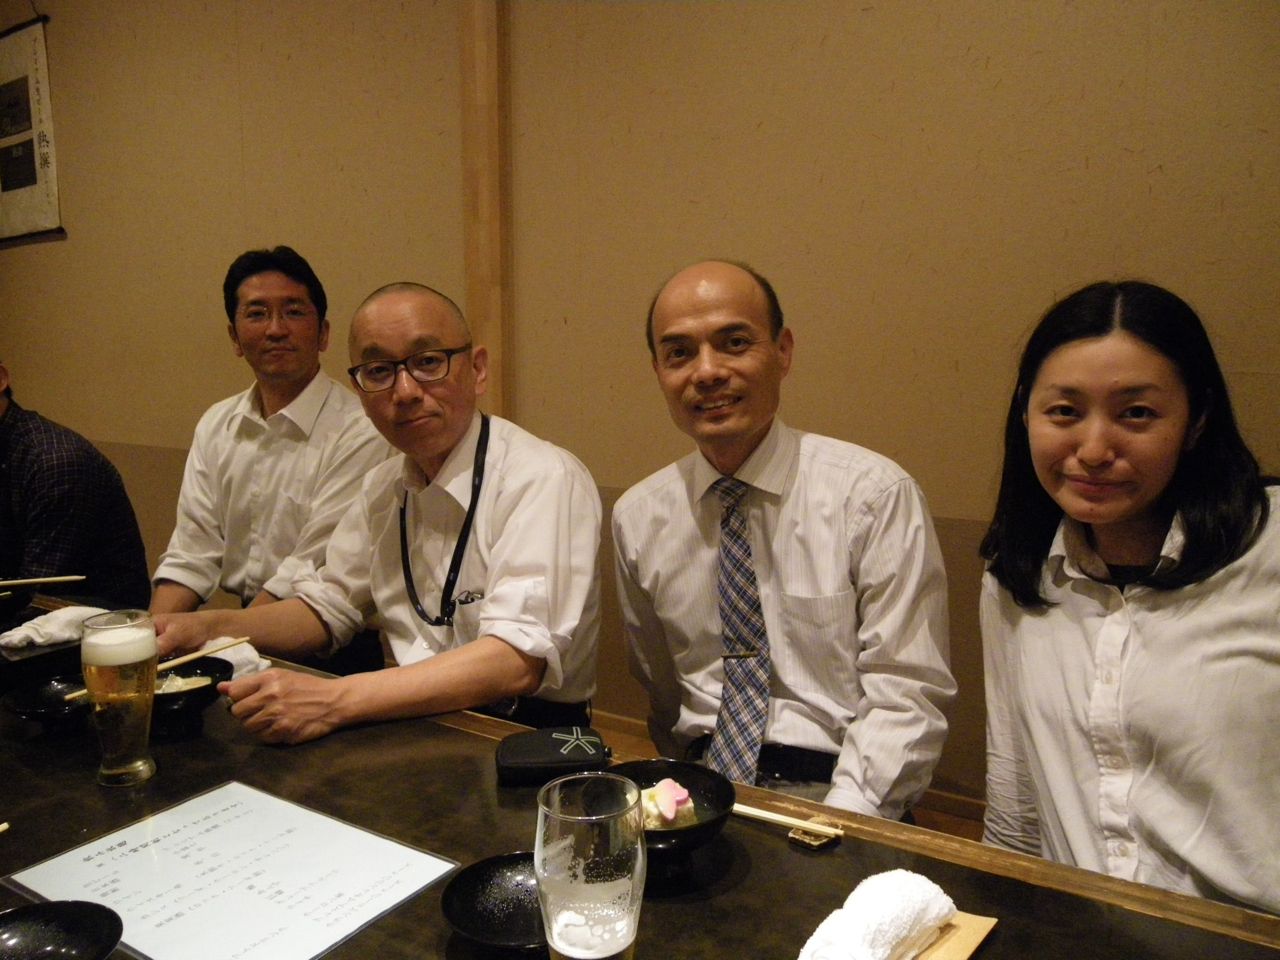 日本産業衛生学会-2013年-松山